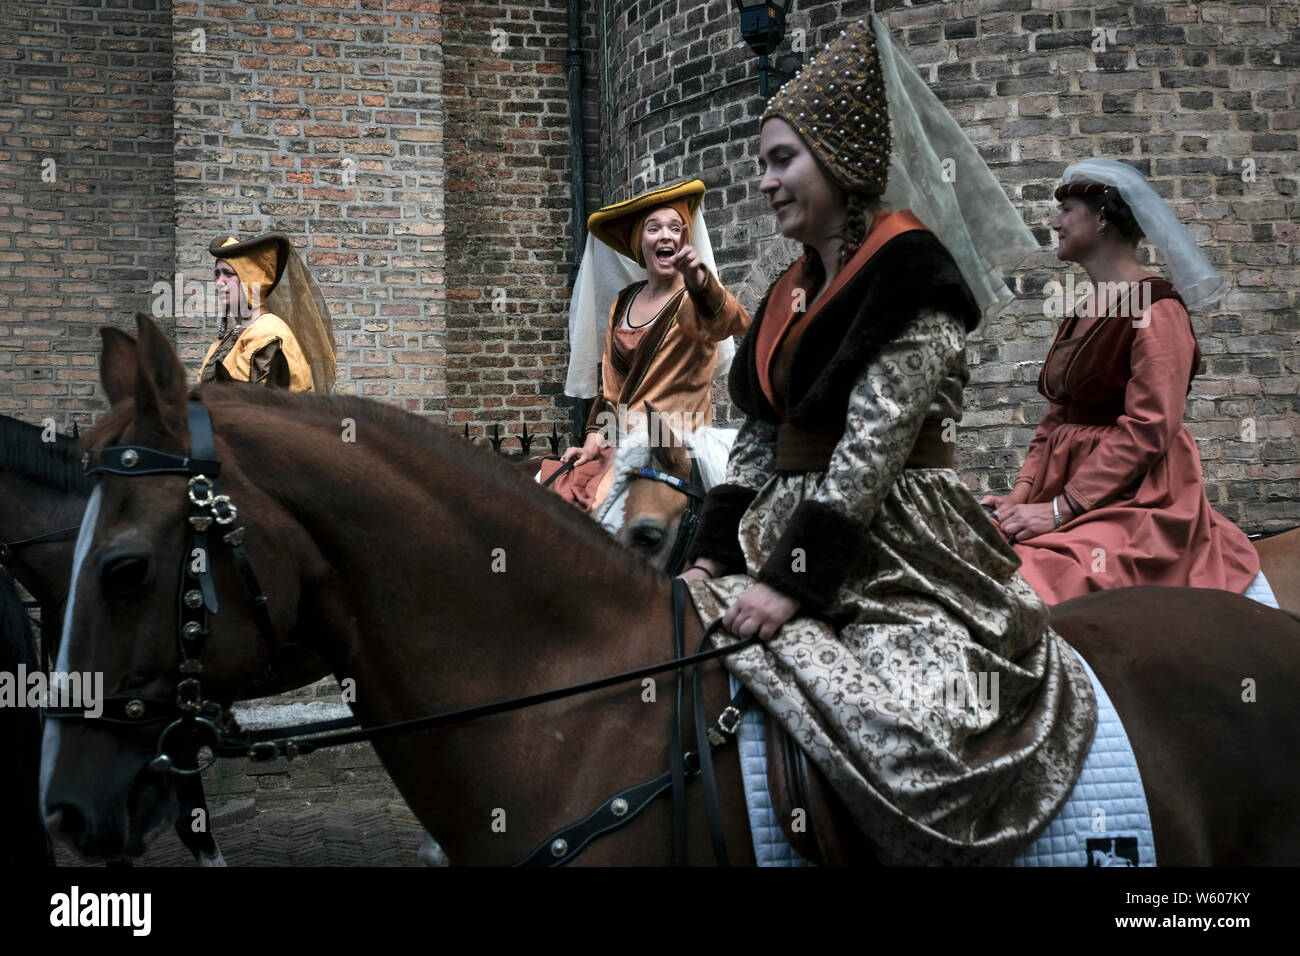 Un groupe de femmes vêtus de costumes d'blague comme ils montent leurs chevaux. Banque D'Images